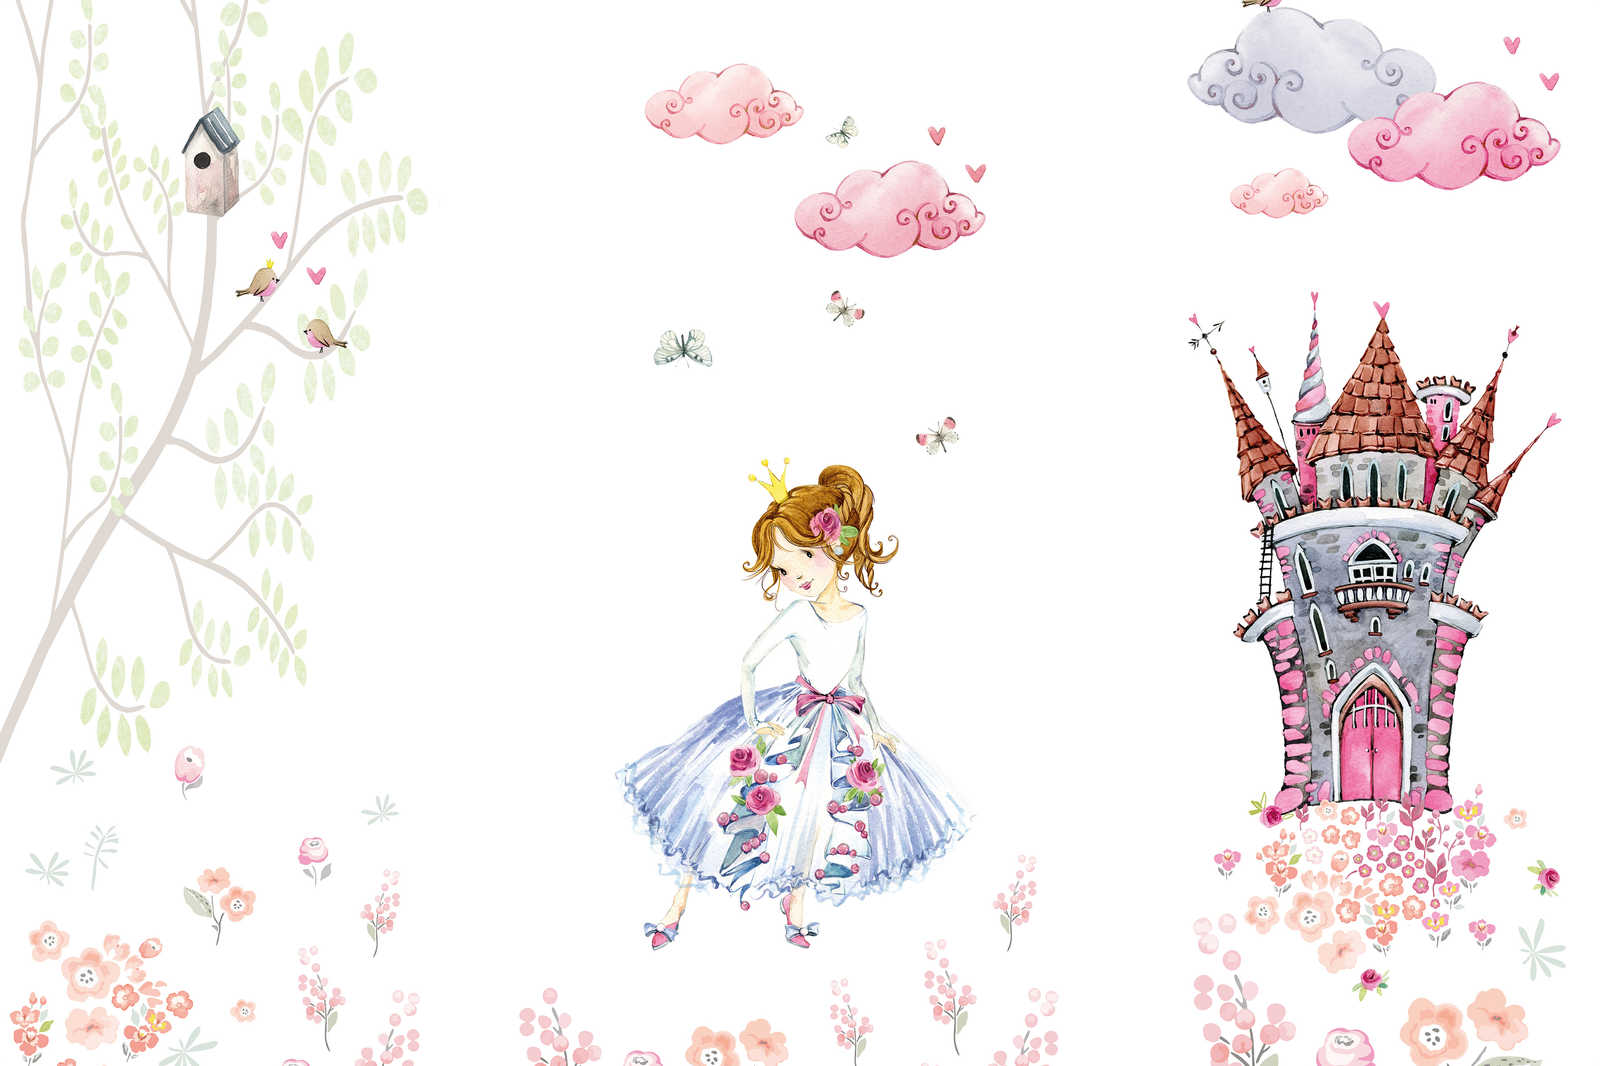             Quadro su tela con principessa nel giardino del castello per bambini - 0,90 m x 0,60 m
        